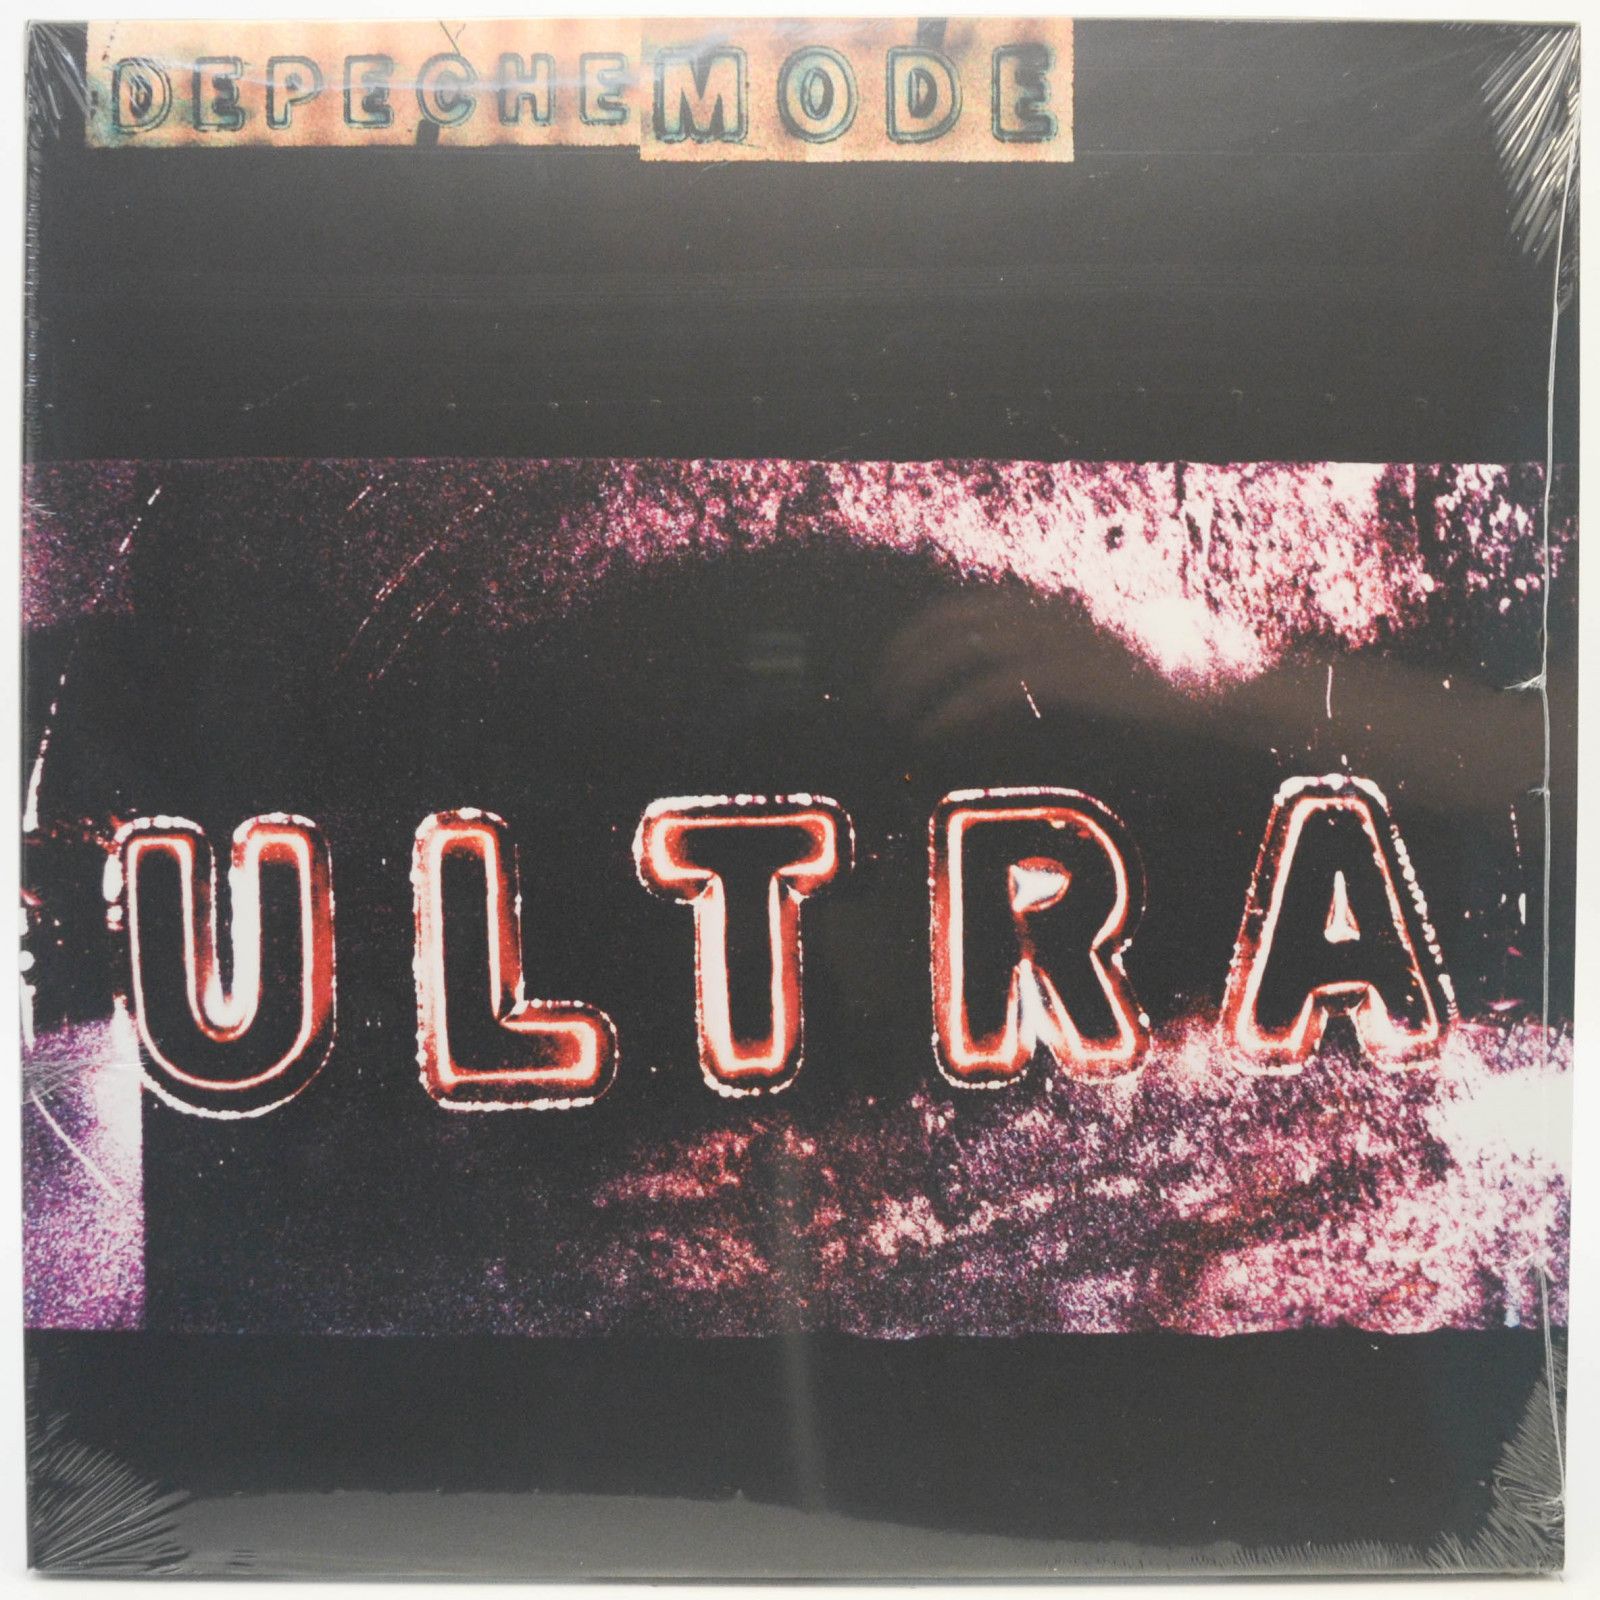 Depeche Mode — Ultra, 1996